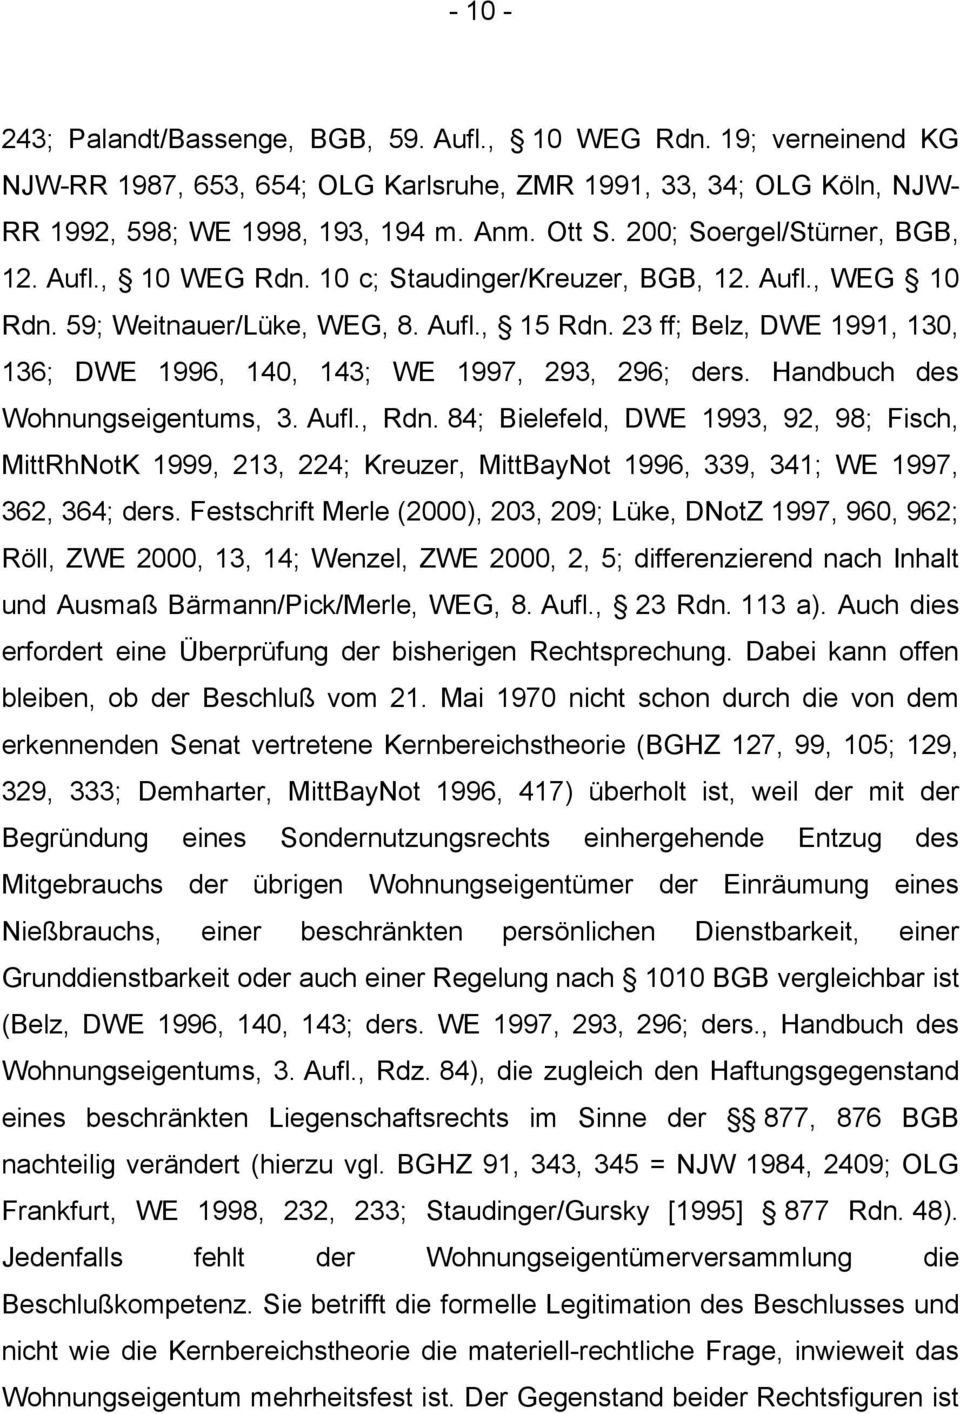 23 ff; Belz, DWE 1991, 130, 136; DWE 1996, 140, 143; WE 1997, 293, 296; ders. Handbuch des Wohnungseigentums, 3. Aufl., Rdn.